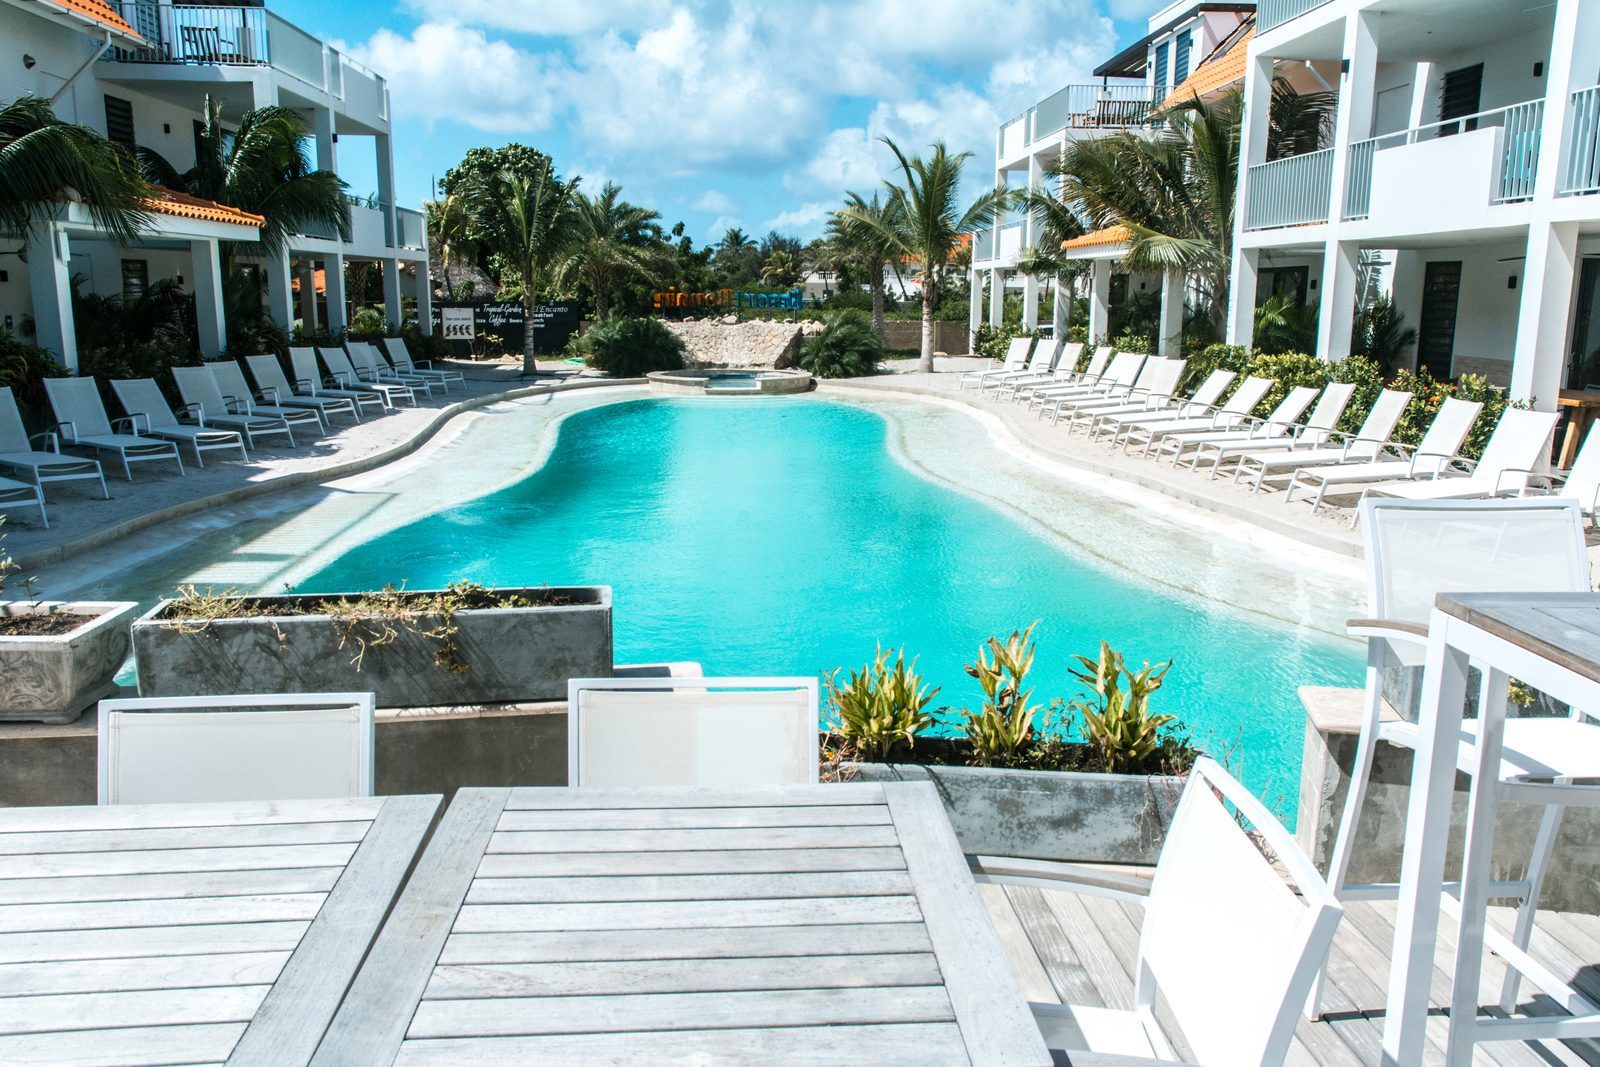 Les appartements du Resort Bonaire proposent plusieurs terrasses qui donnent sur la pisine.